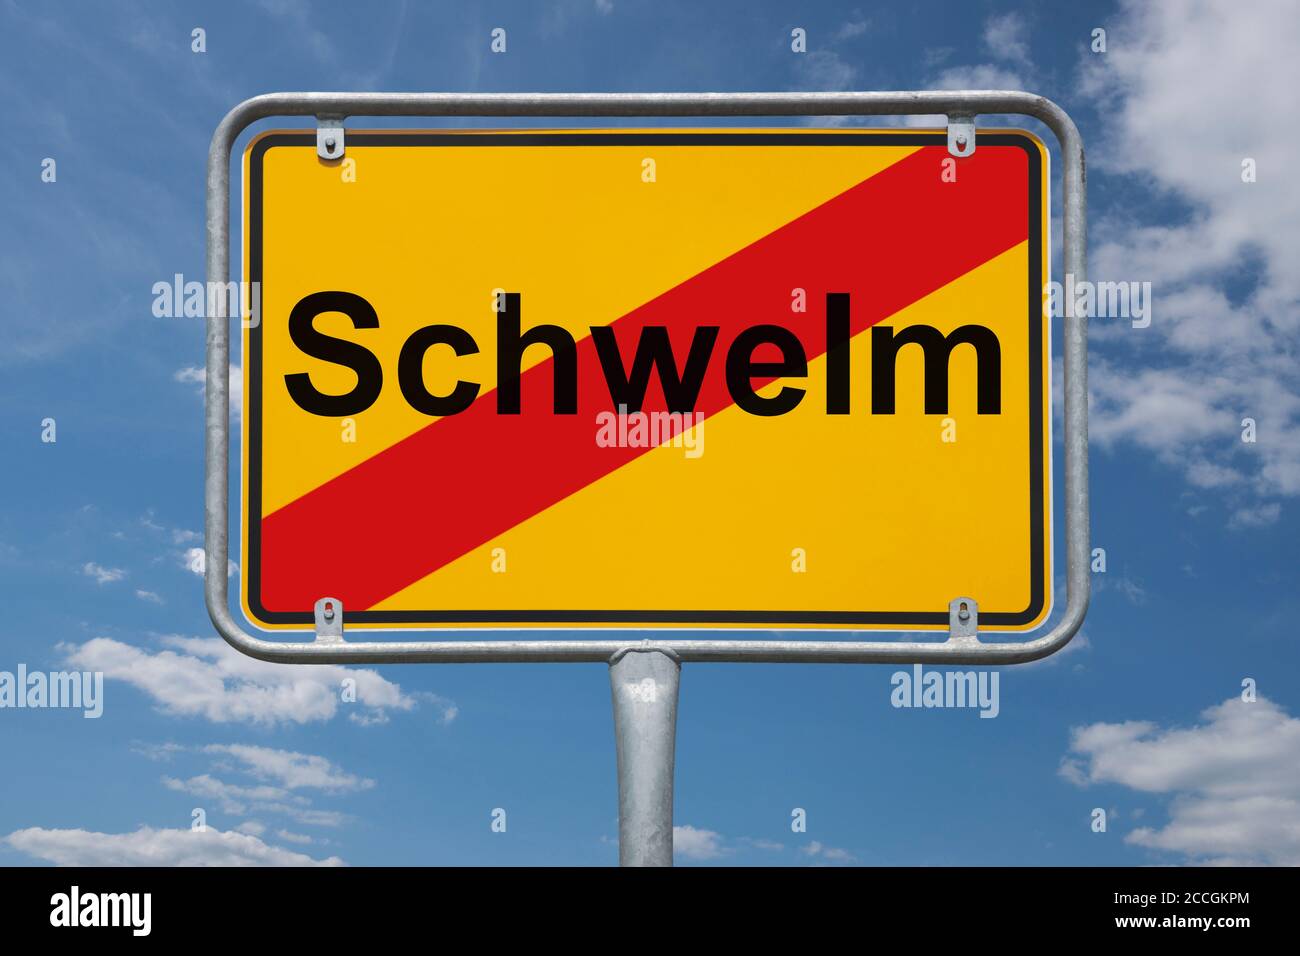 Ortstafel Schwelm, Nordrhein-Westfalen, Deutschland | Place name sign Schwelm, North Rhine-Westphalia, Germany, Europe Stock Photo